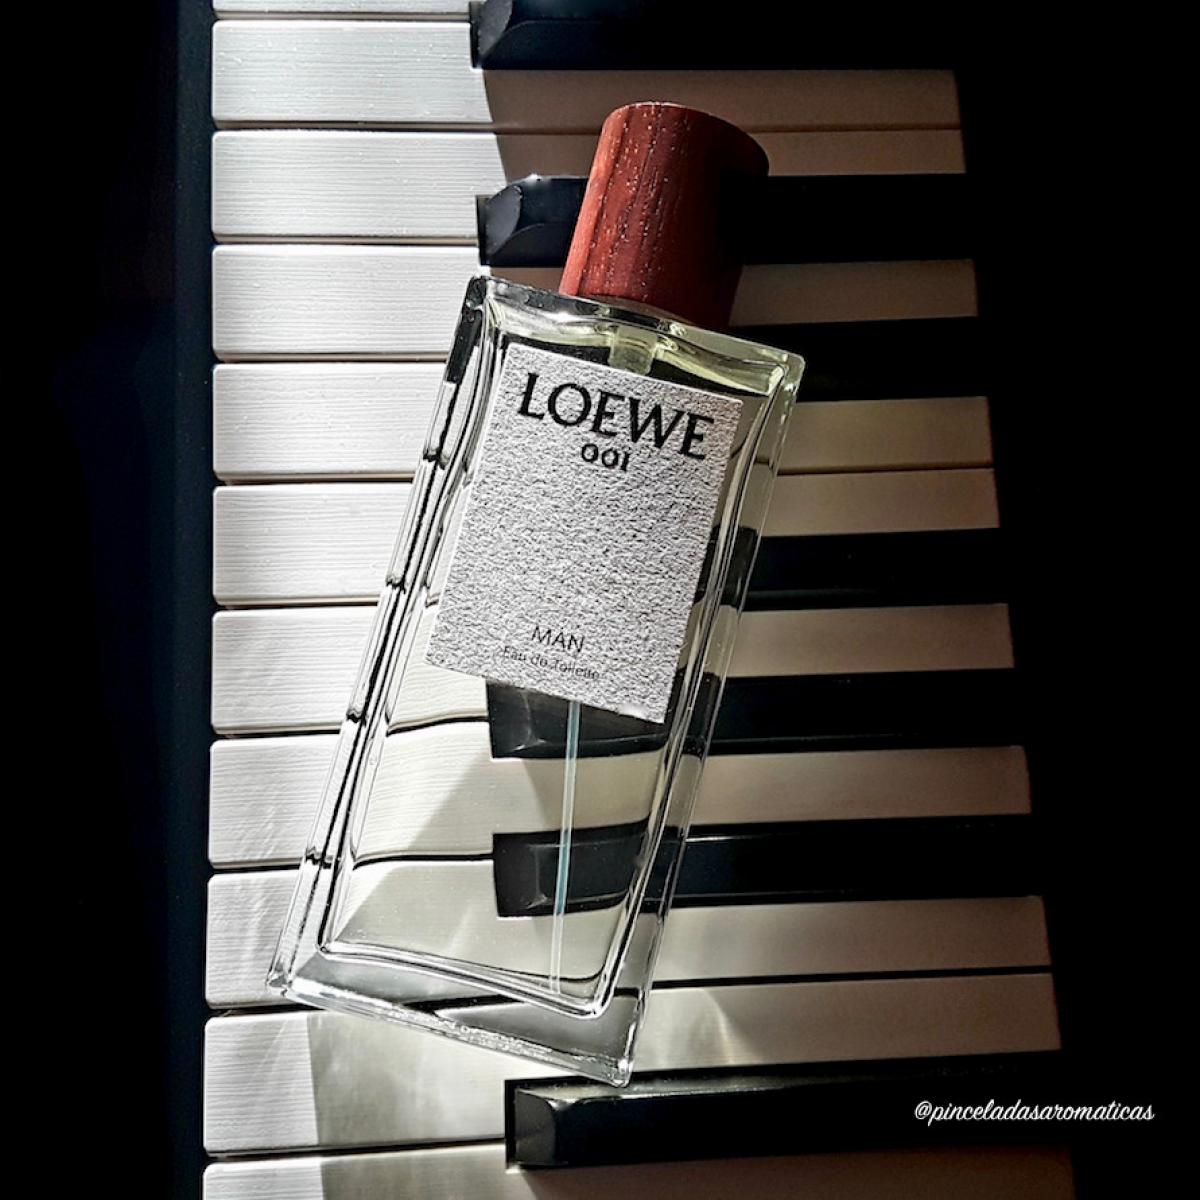 Loewe 001 Man EDT Loewe colônia - a fragrância Masculino 2017